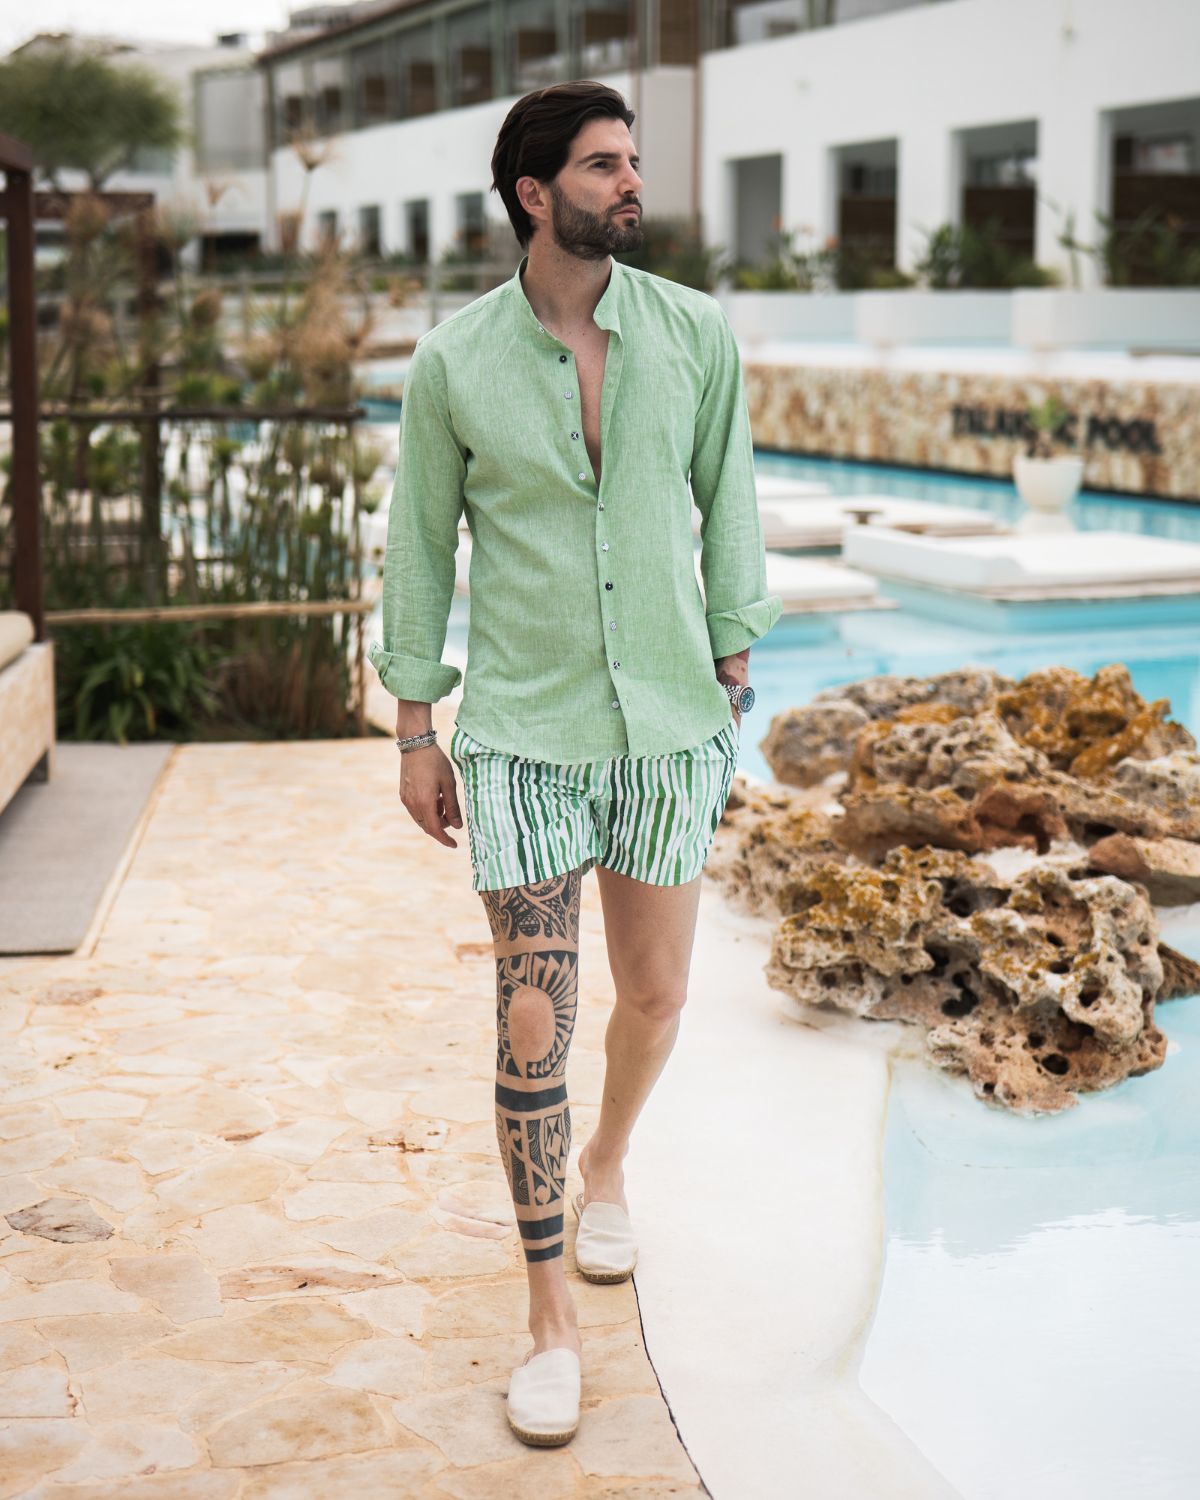 Stripe - green patterned swimsuit